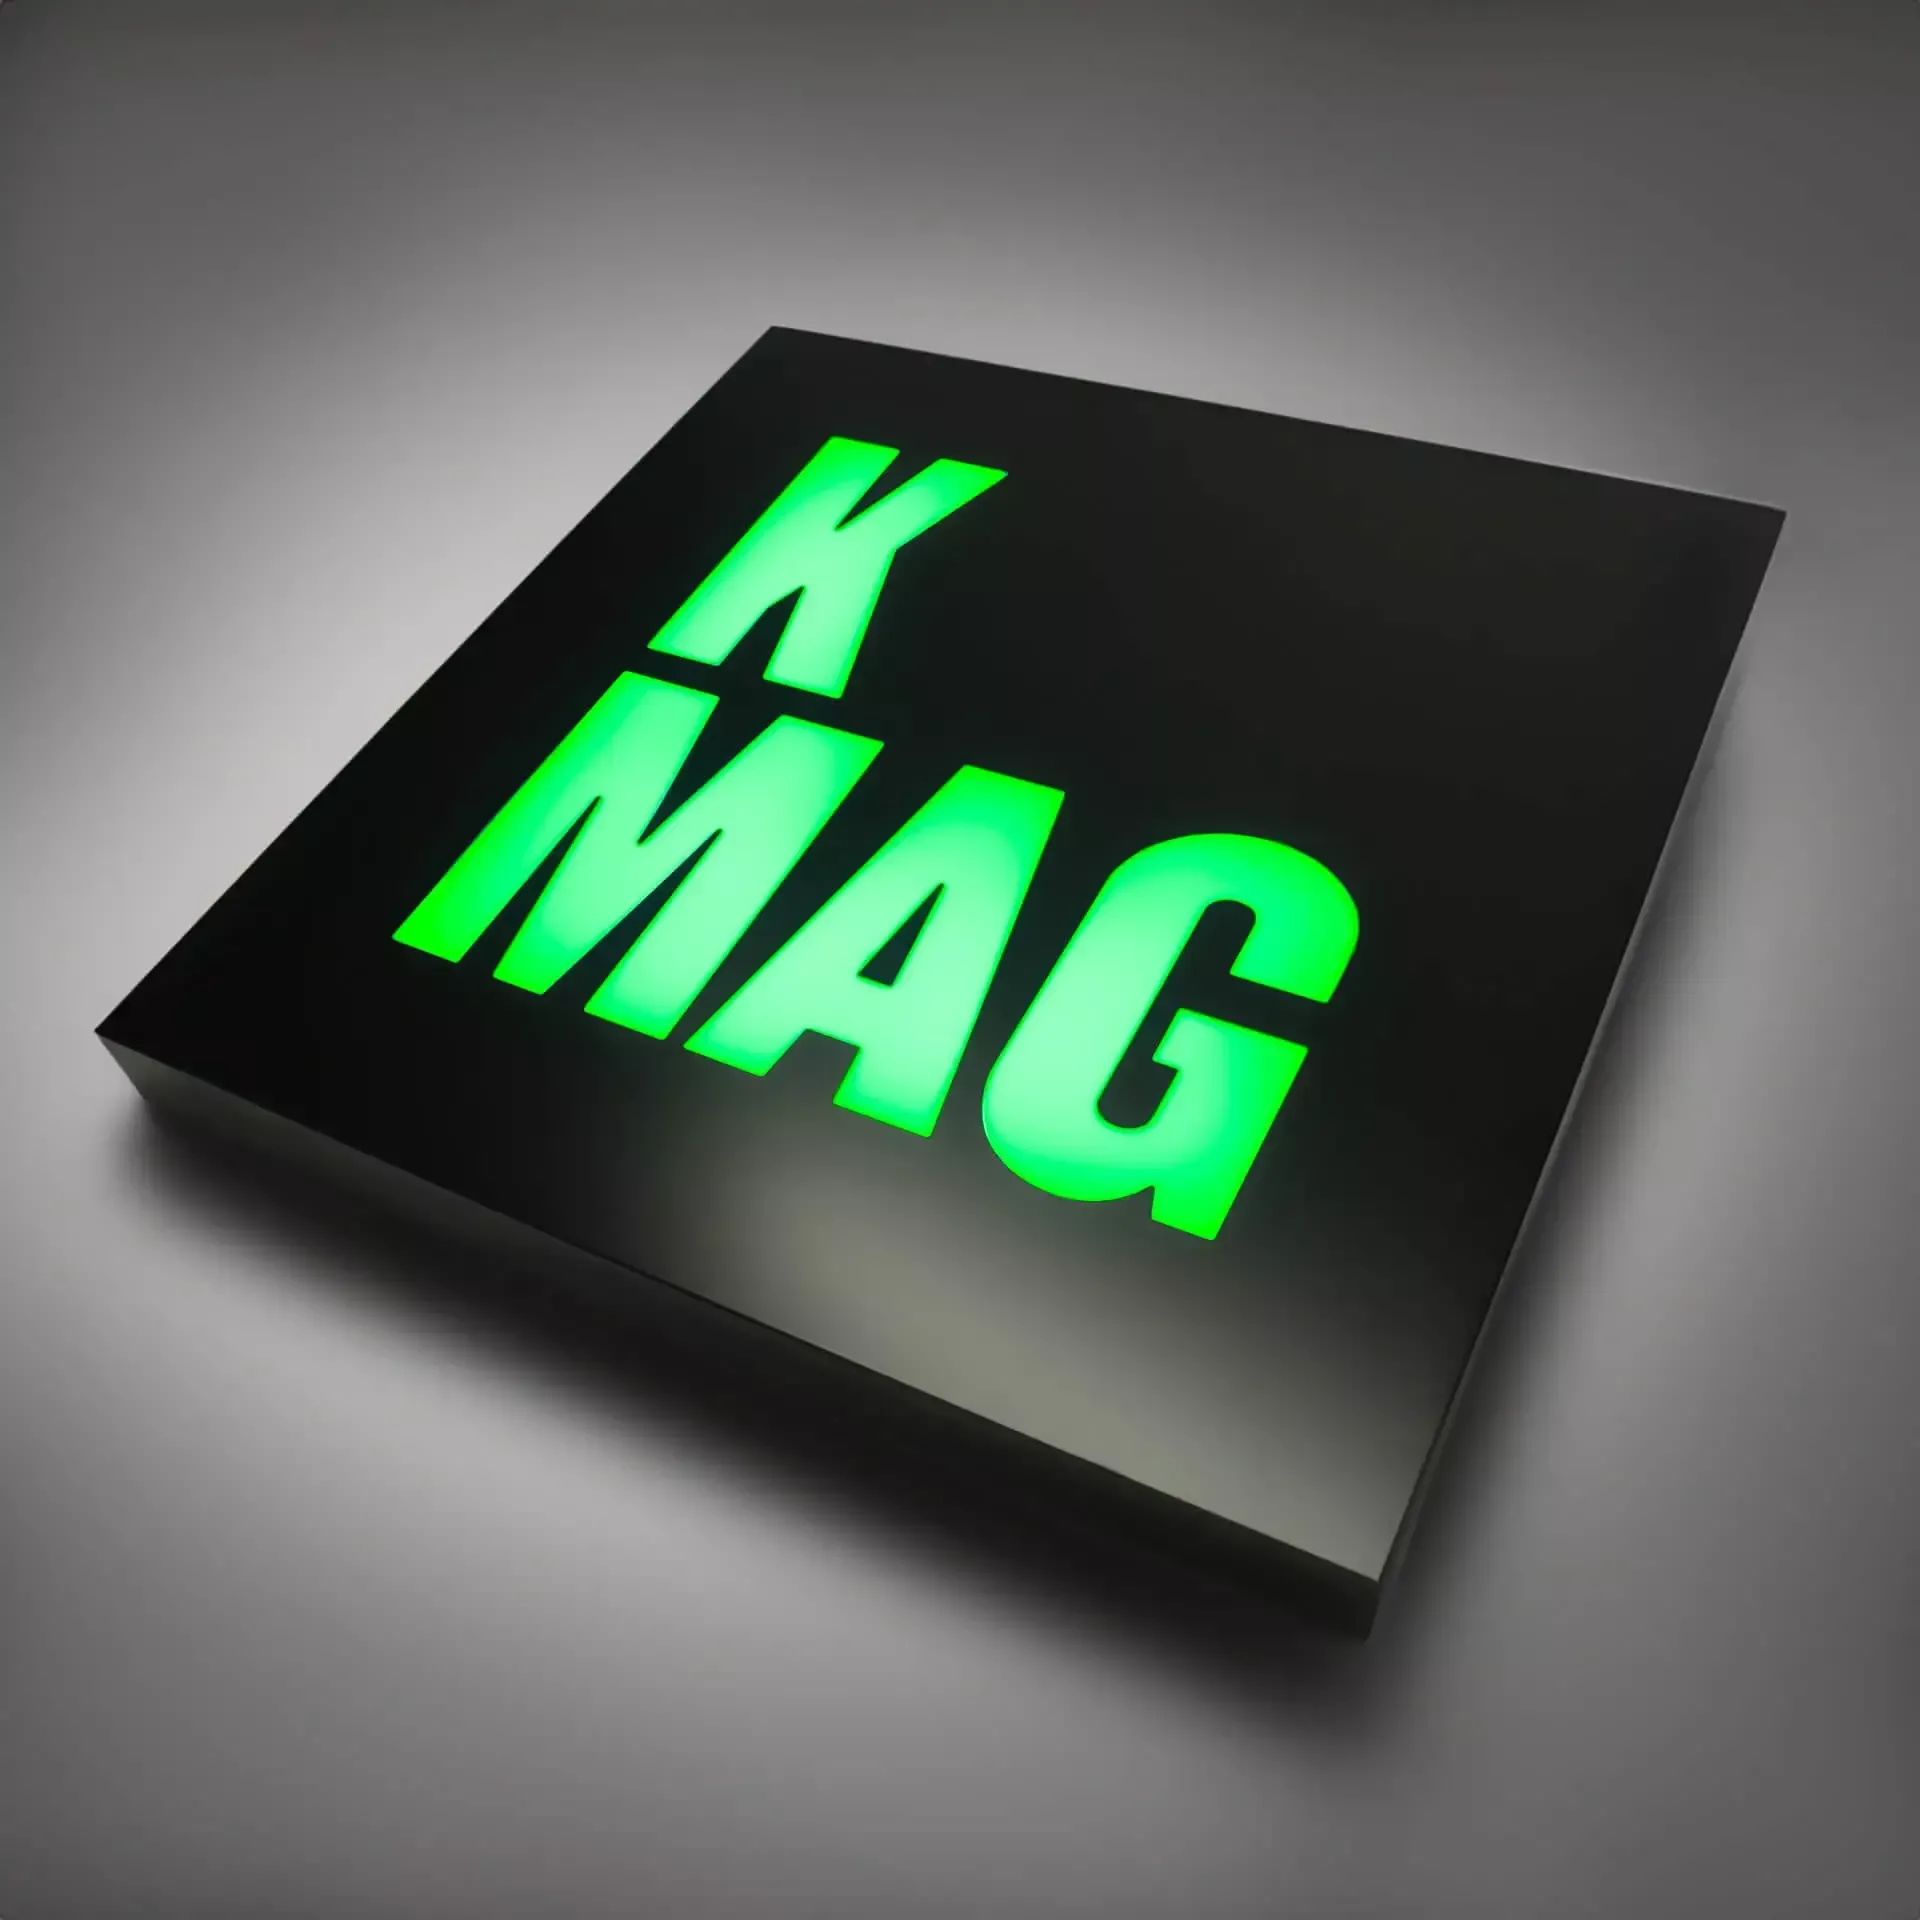 K MAG - Beleuchteter LED-Leuchtkasten